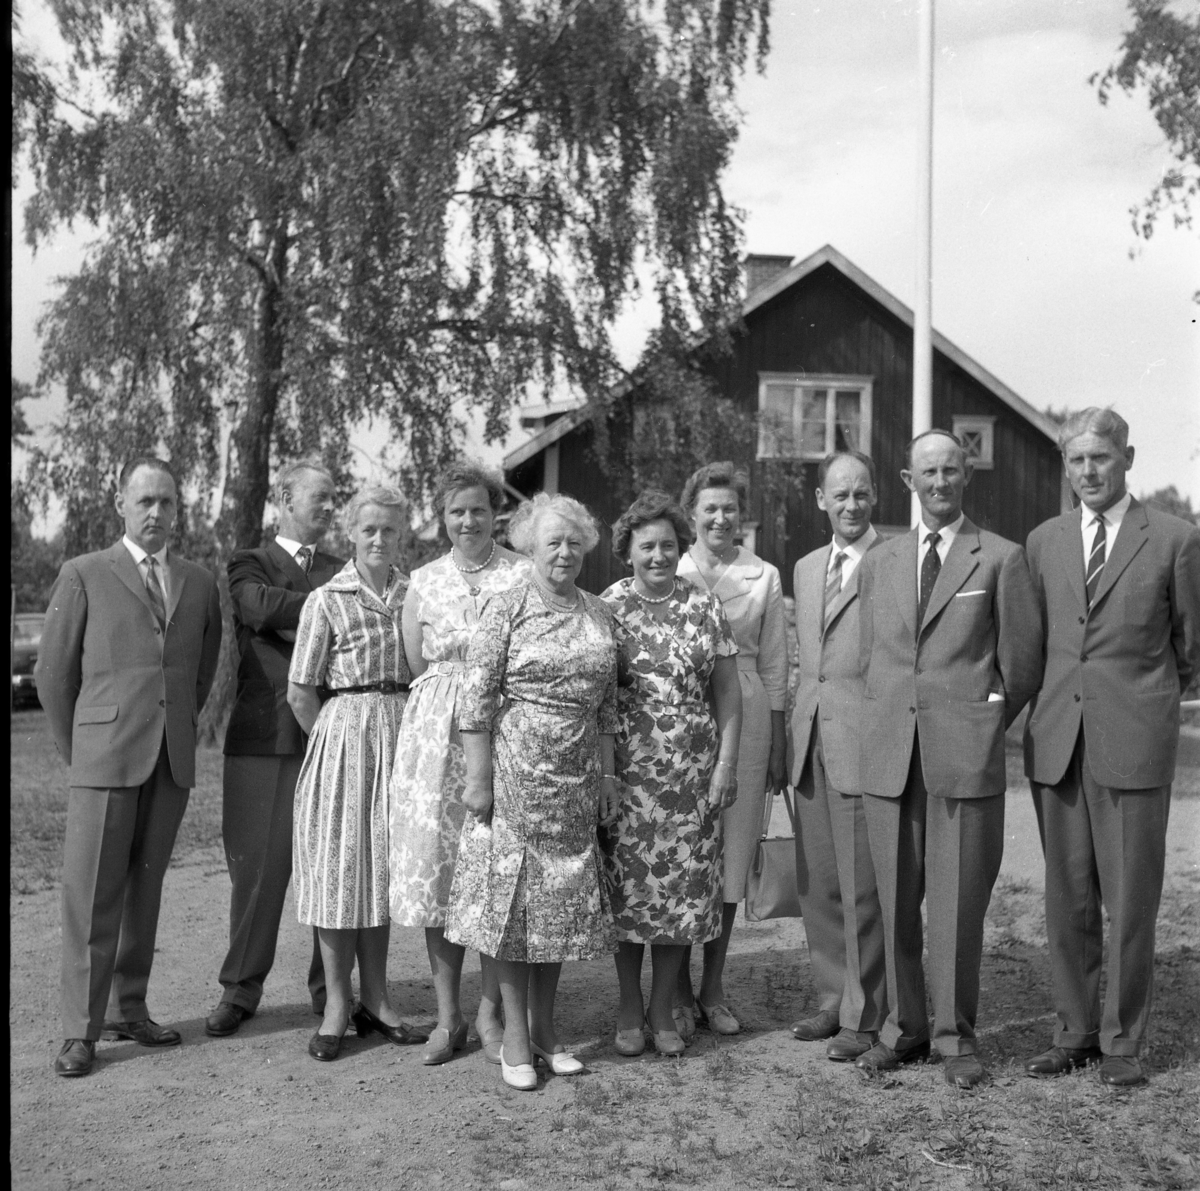 Skolträff i Reaby 1962. Kvinnor och män uppställda på skolgården framför en flaggstång, fr v: okänd, Nils Karlsson, Elvina Bjerkhed, okänd, Ruth Pettersson samt okända. Mannen till höger är Sven Rickardsson.